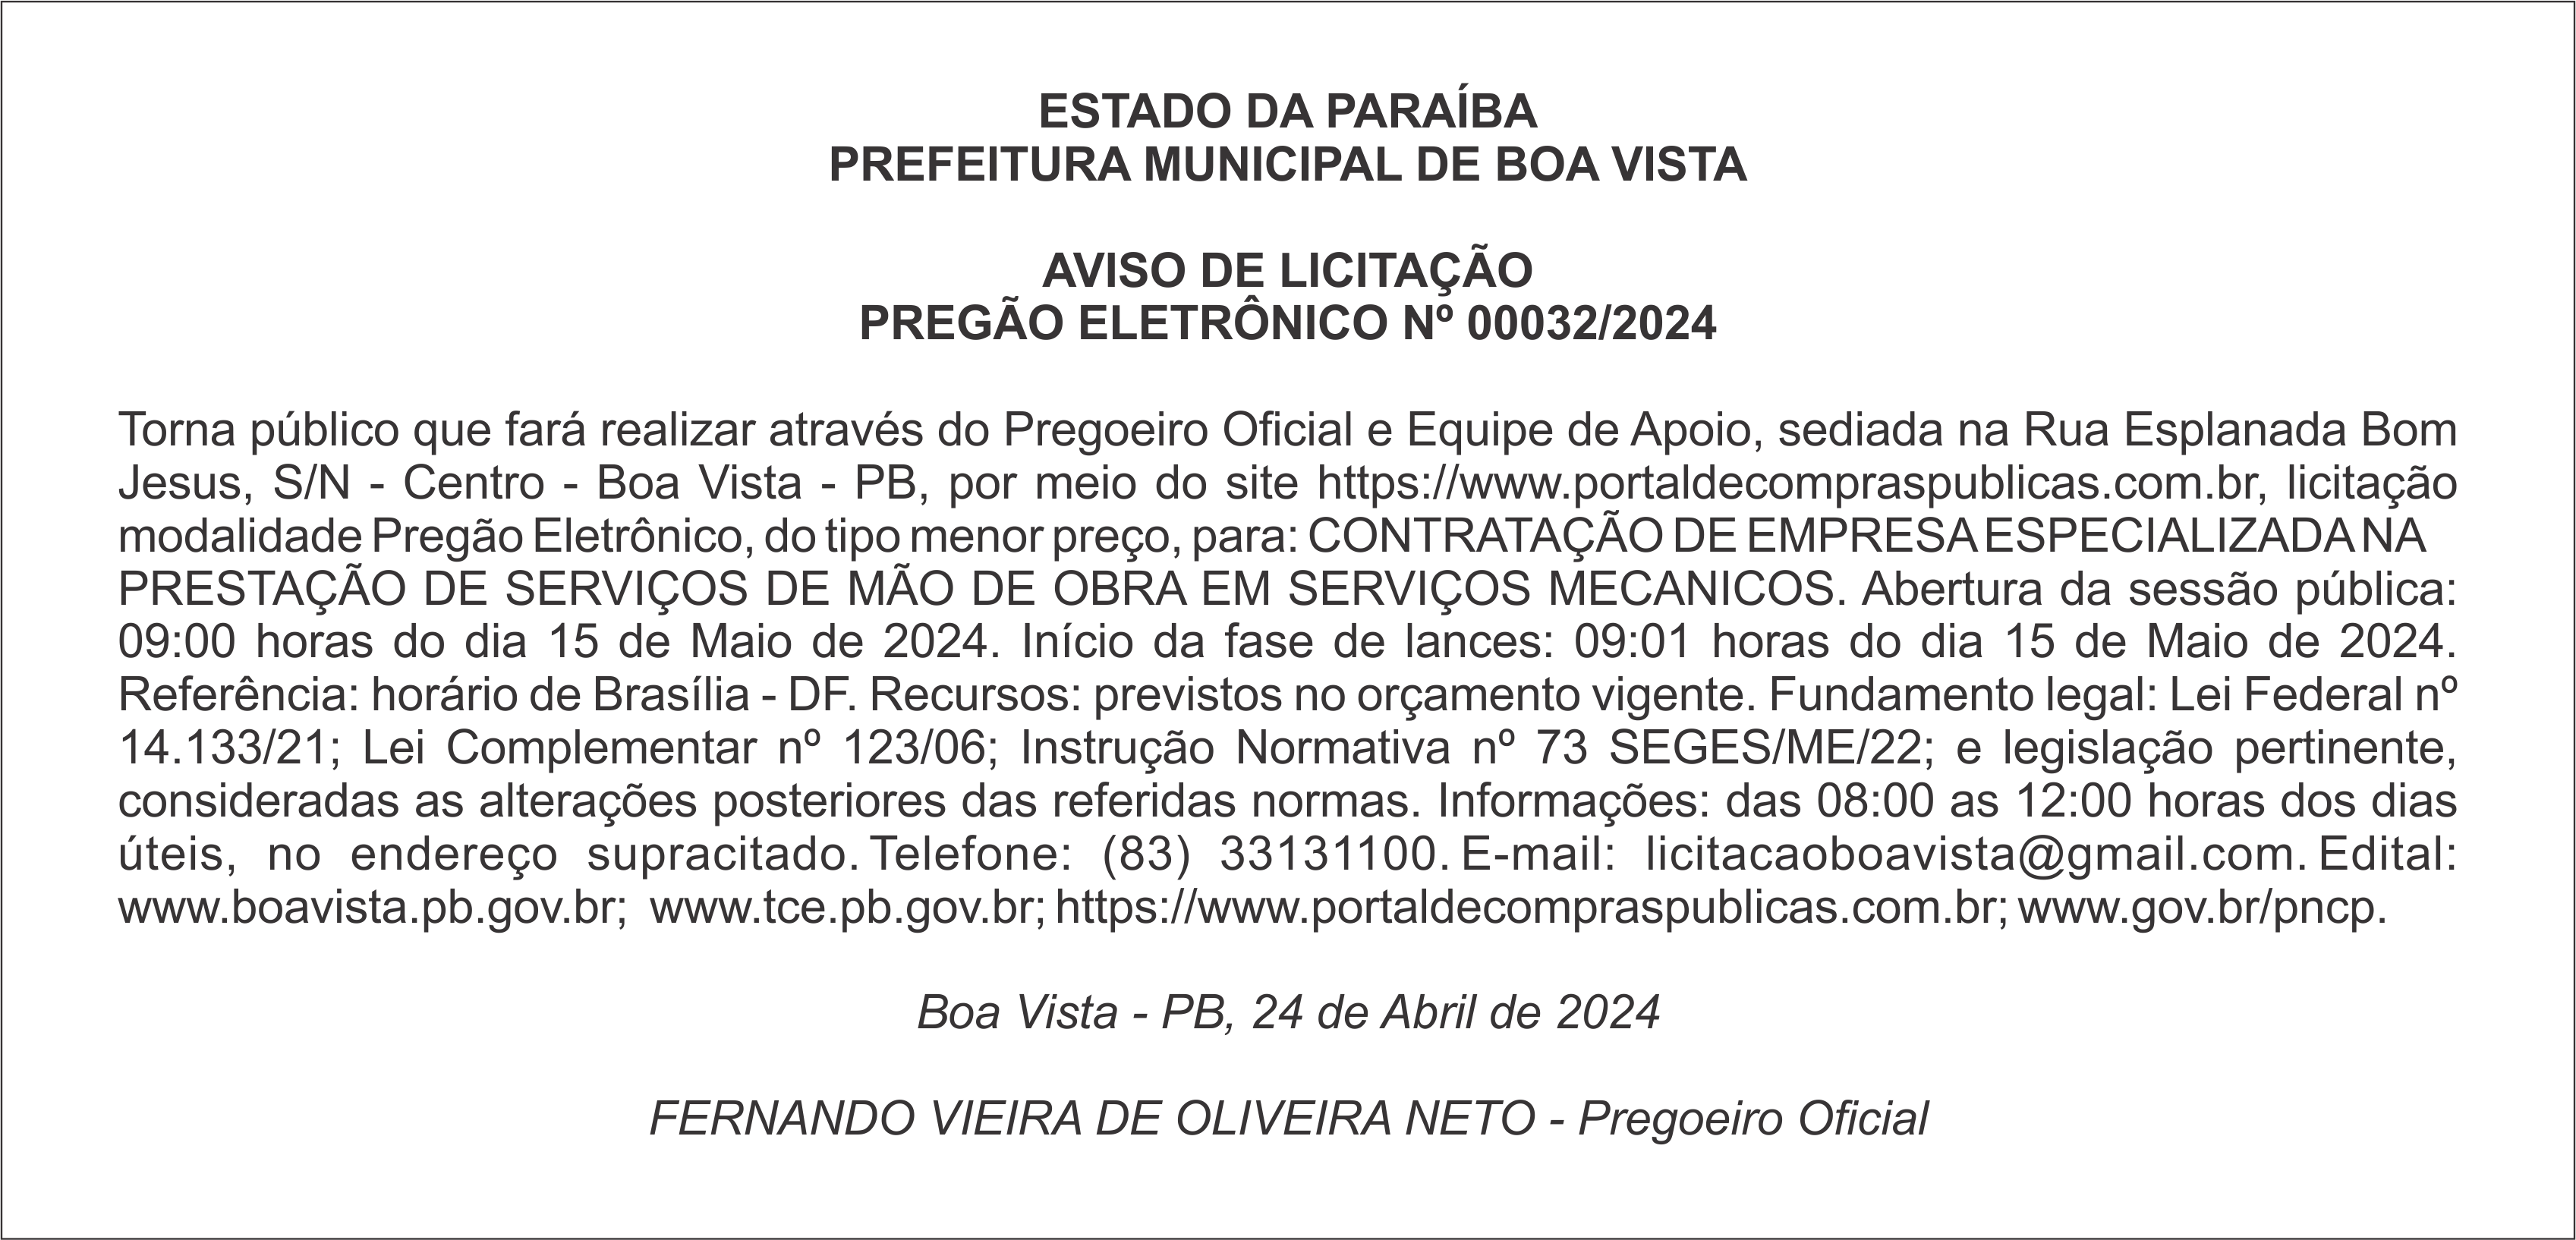 PREFEITURA MUNICIPAL DE BOA VISTA – AVISO DE LICITAÇÃO – PREGÃO ELETRÔNICO Nº 00032/2024